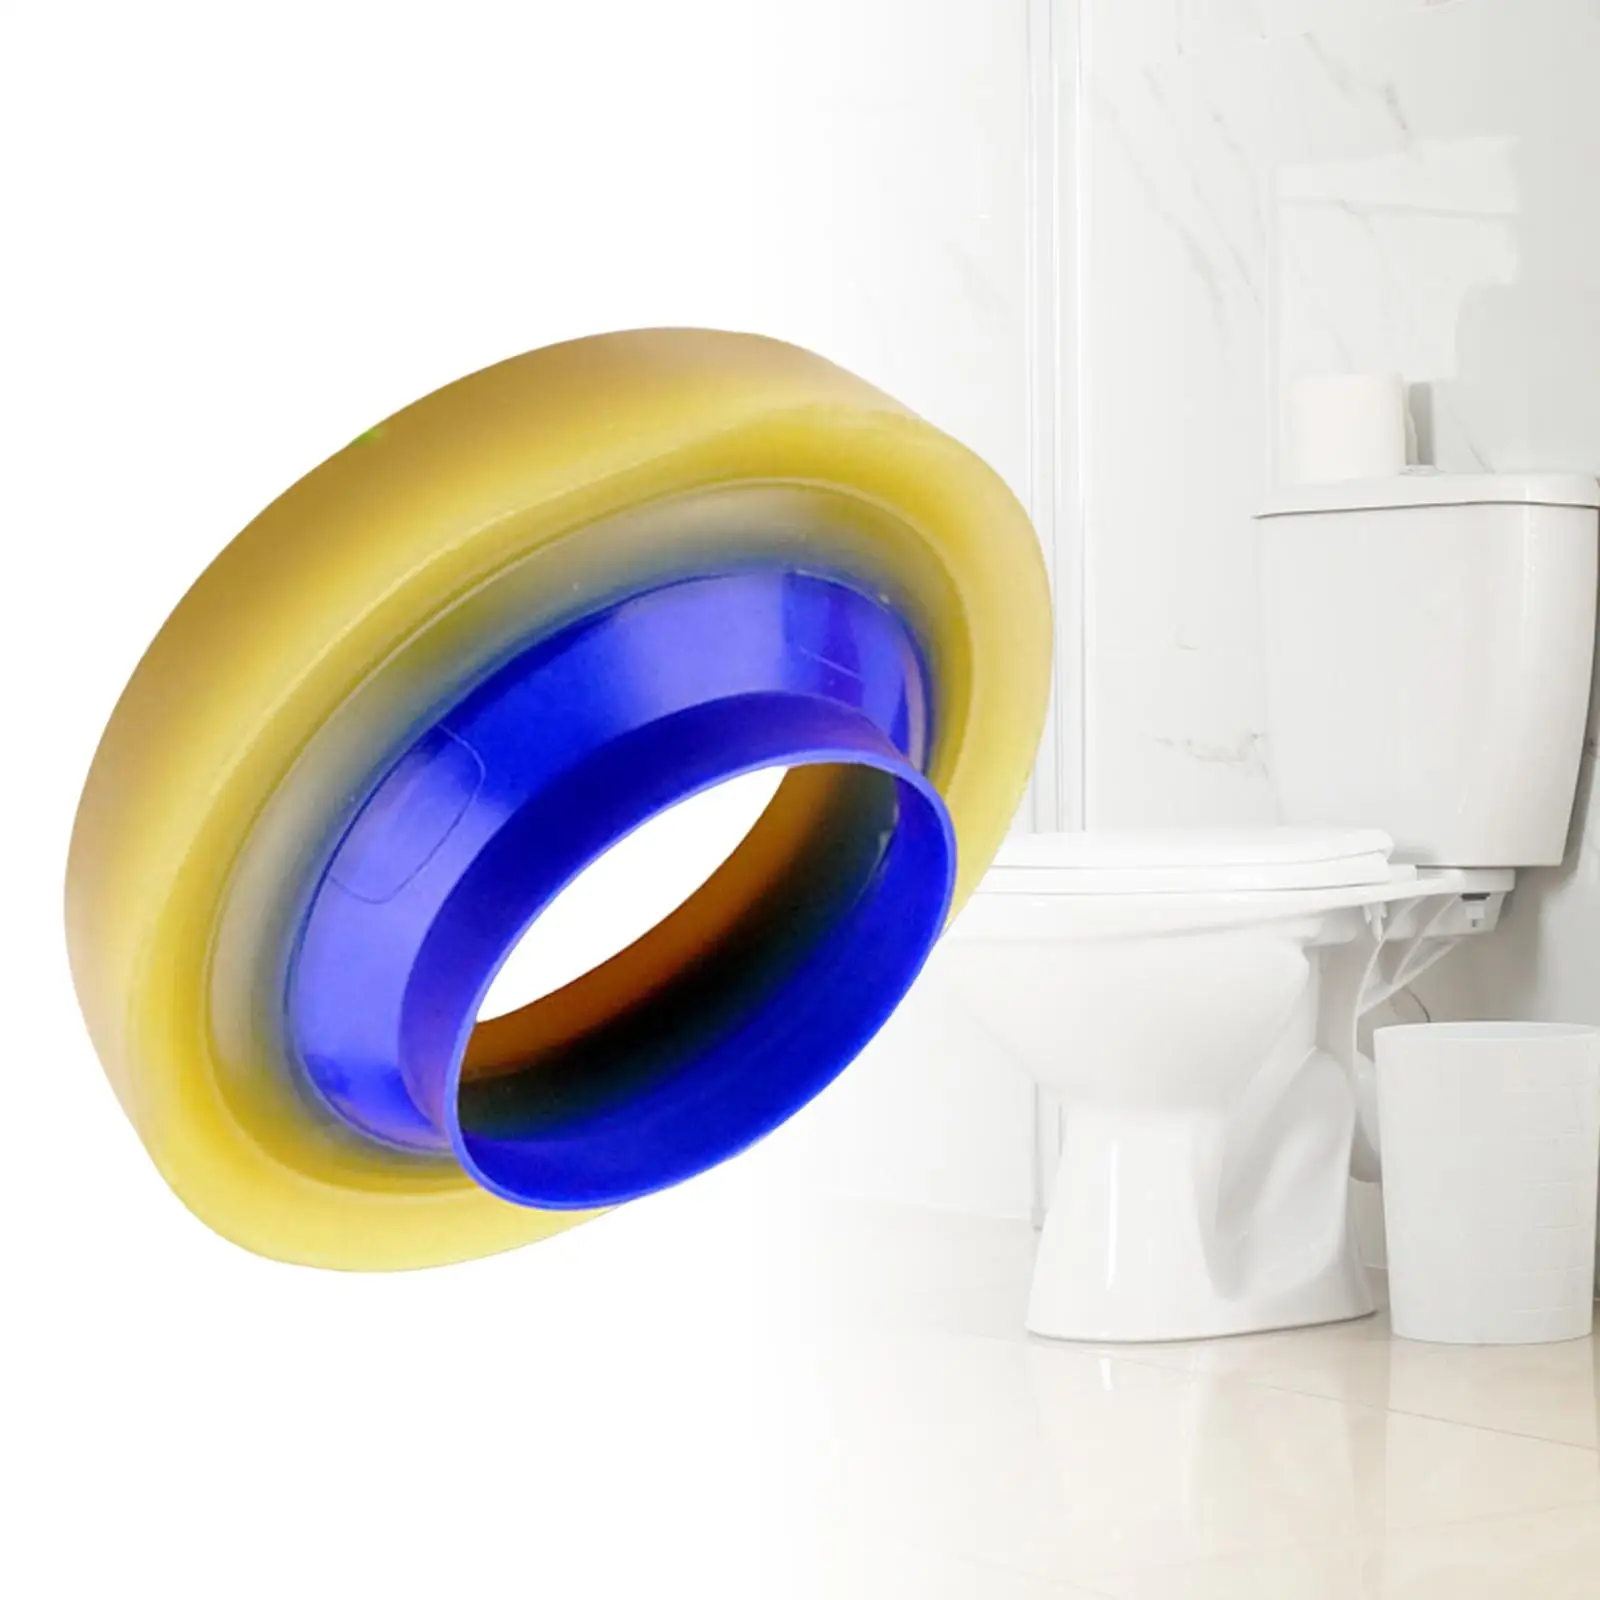 Universal Toilet Flange Sealing loop Easy Install Thickened Flange Replacement Bowl Gasket Drain Pipe Toilet loop Repair Kits